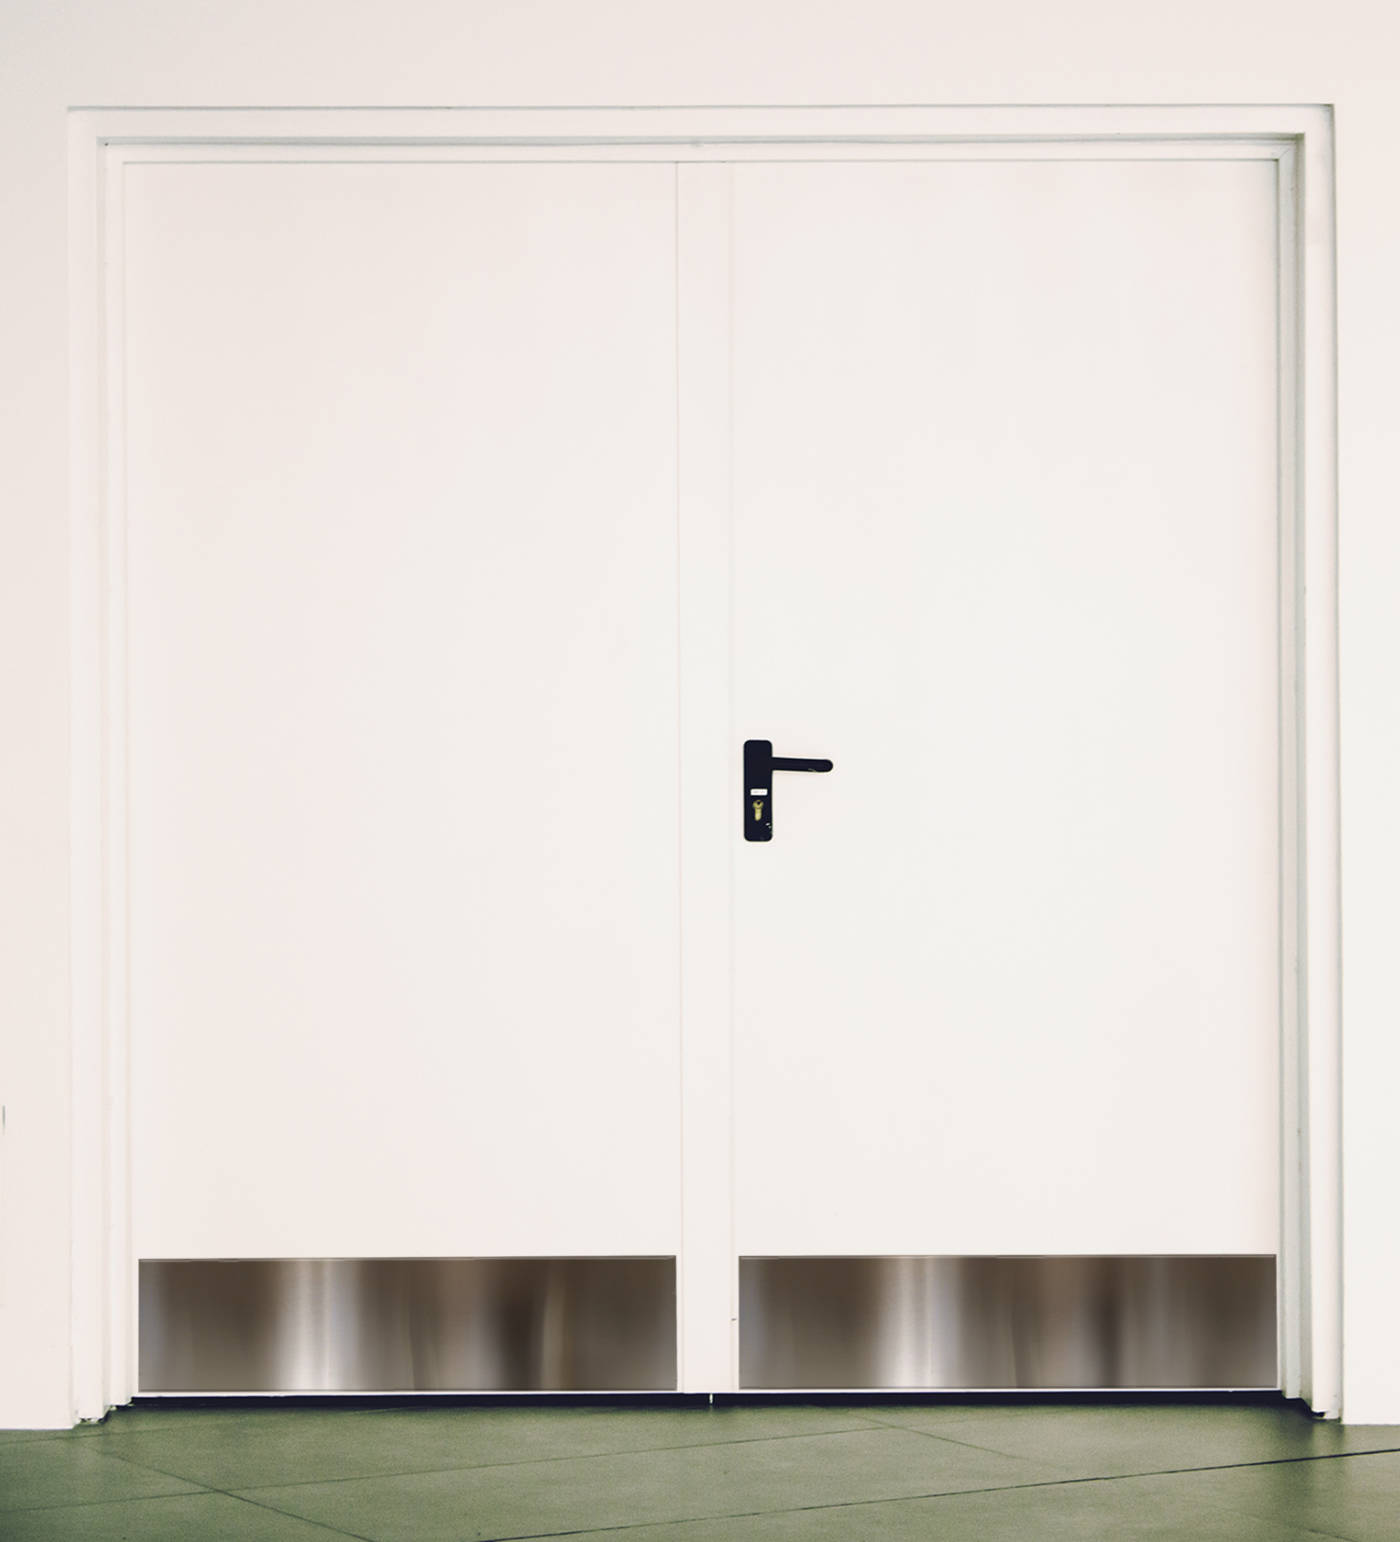 stainless steel door kick panels